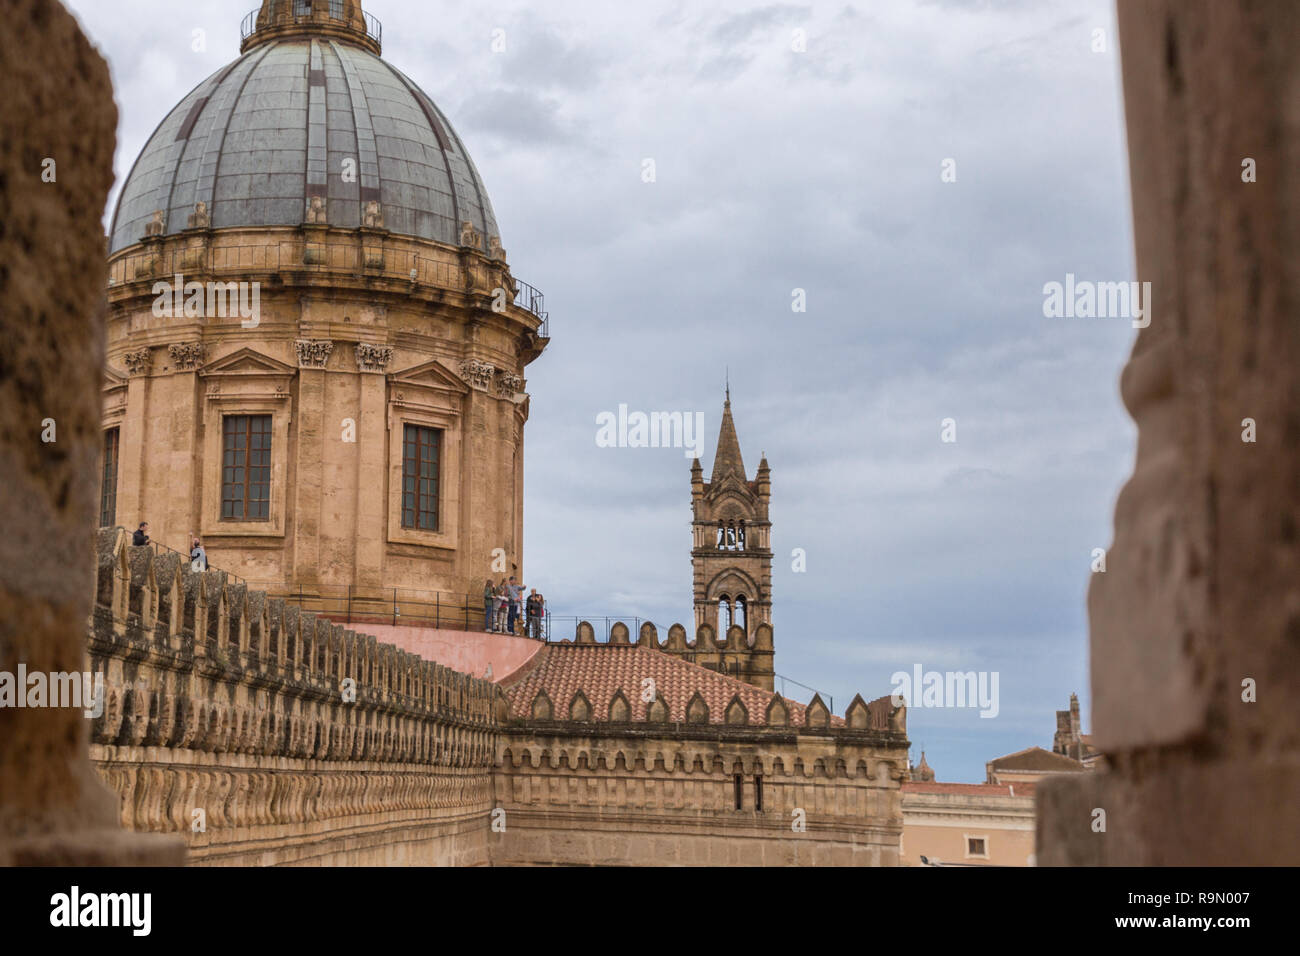 La cathédrale de Palerme (Cathédrale de l'Assomption de la Vierge Marie) à Palerme, Sicile, Italie. Complexe architectural construit à Norman, Maures, Banque D'Images